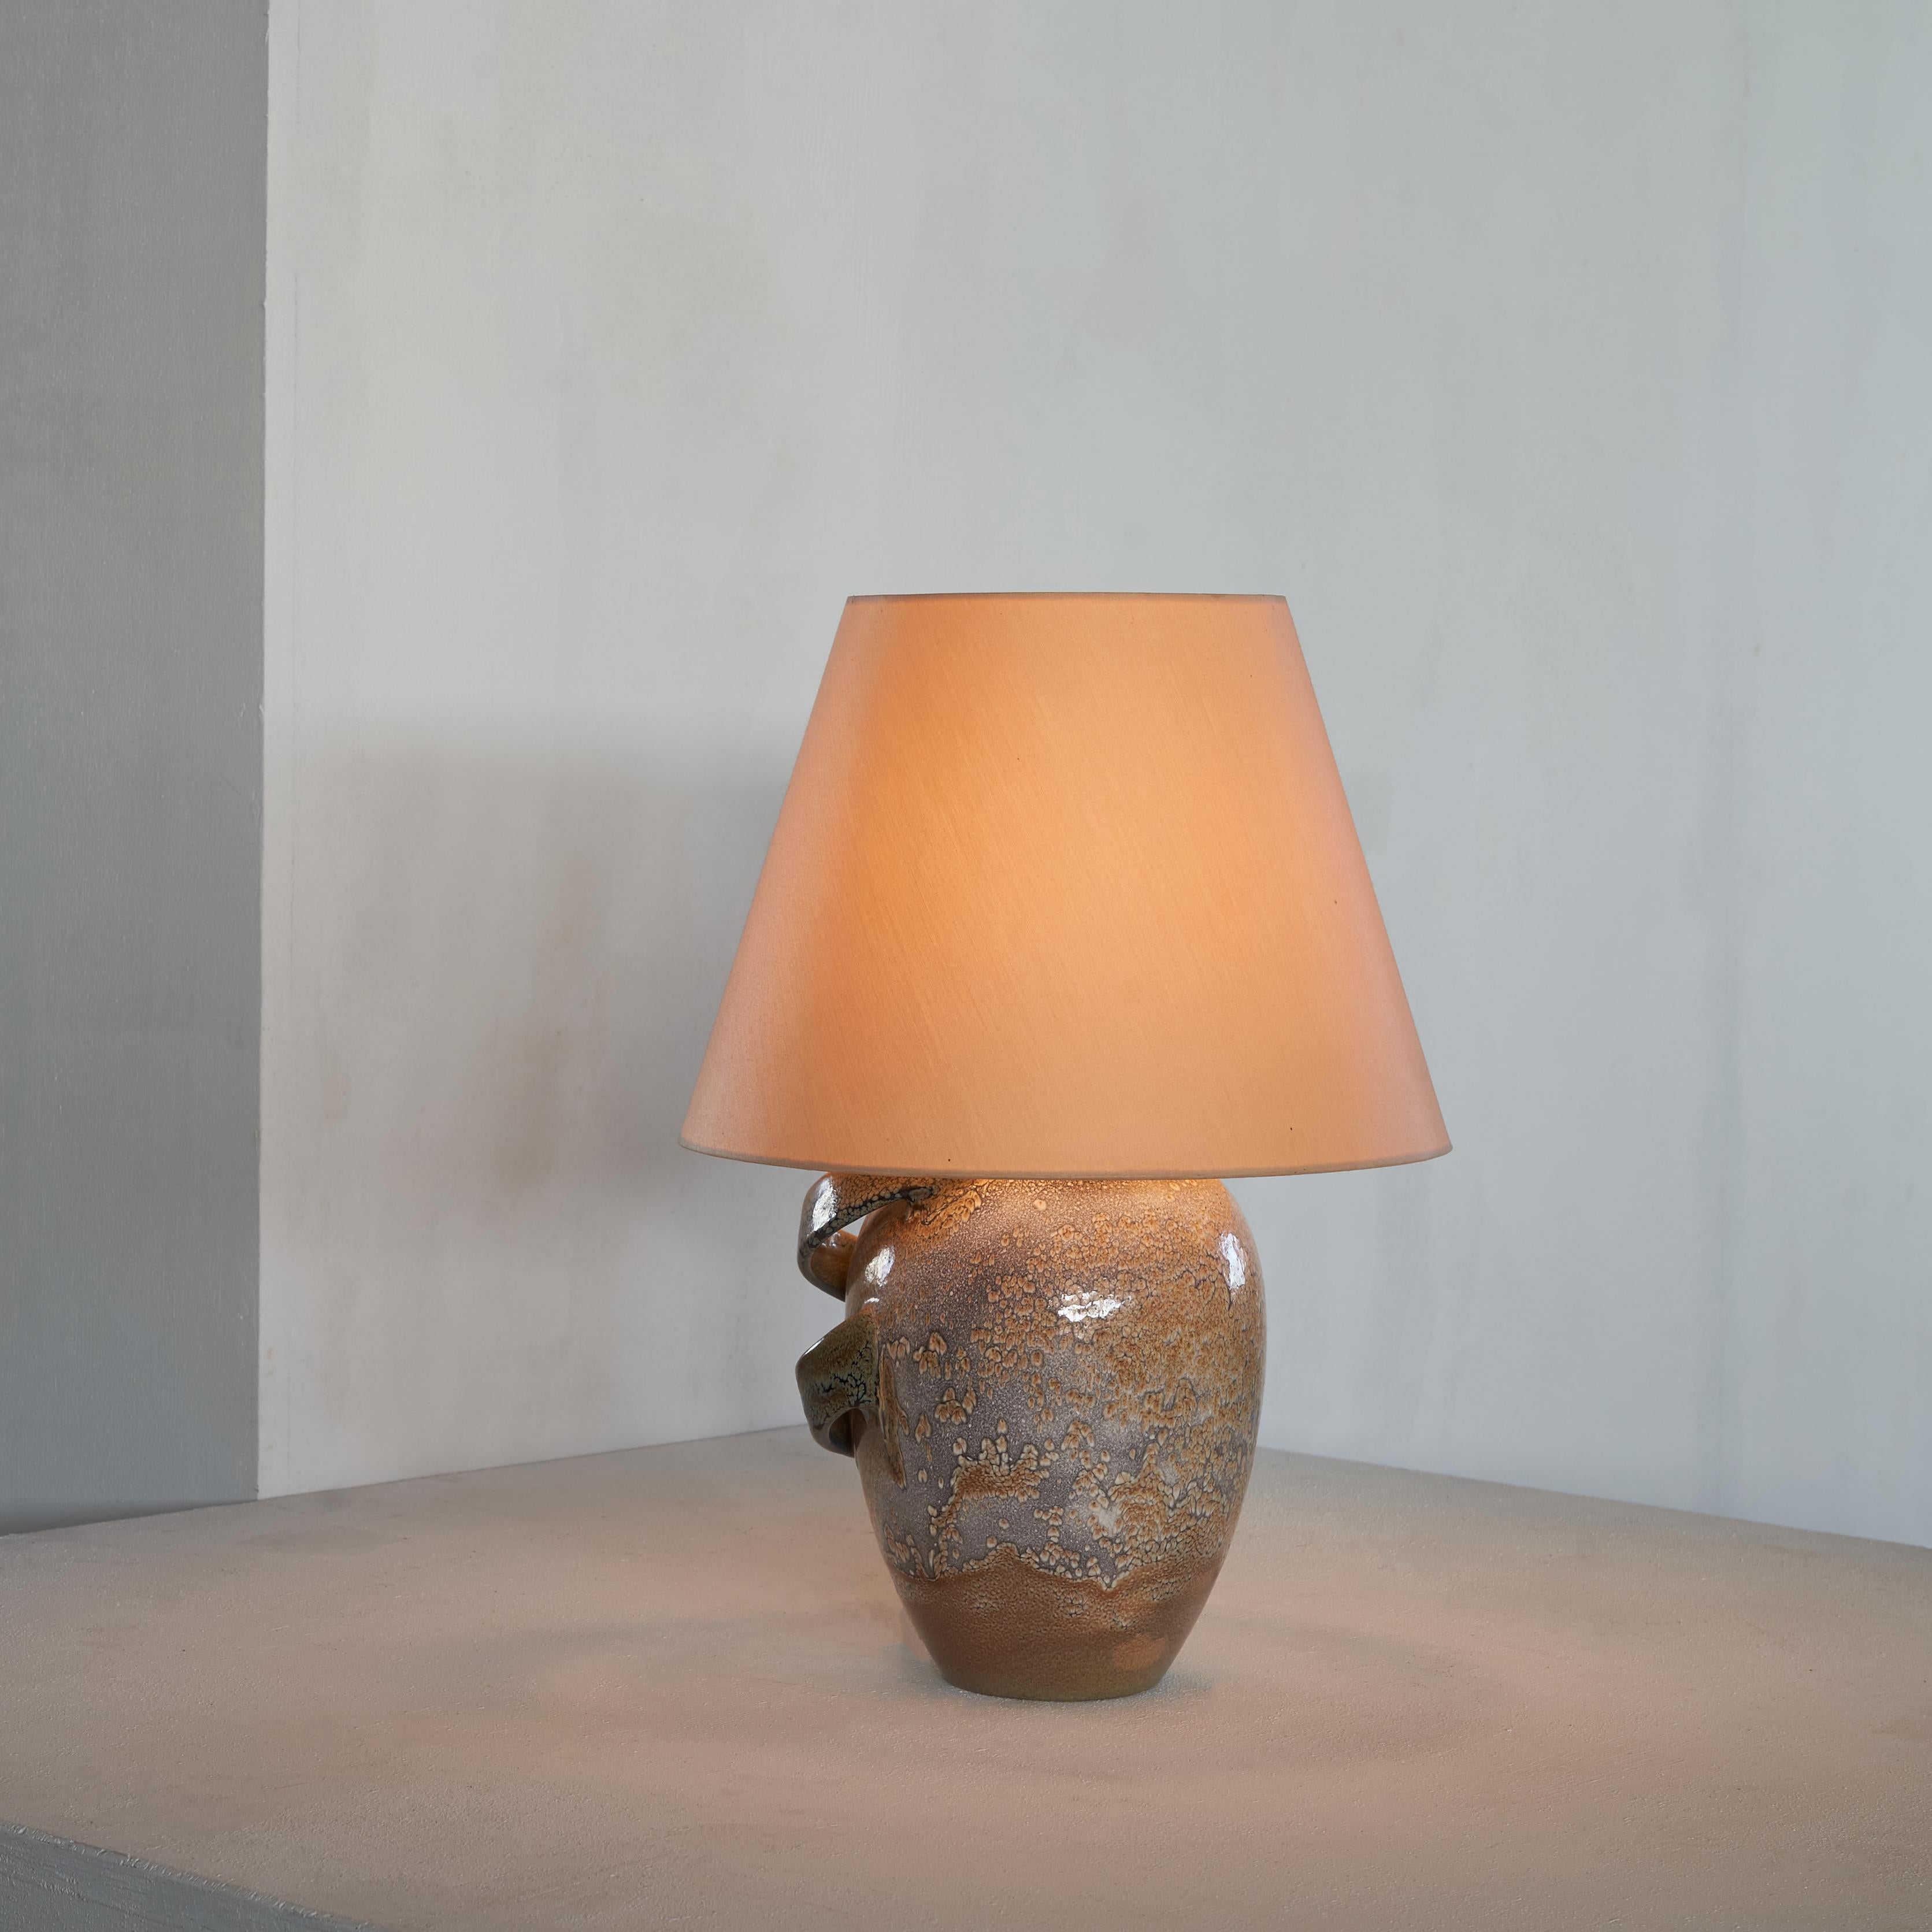 Skulpturale Keramik-Tischlampe, Niederlande, erste Hälfte des 20. Jahrhunderts.

Dies ist eine besondere Keramiklampe. Sowohl die Form als auch die Ausführung sind ausdrucksstark und interessant. Die Lampe hat eine klassische Form und eine schöne